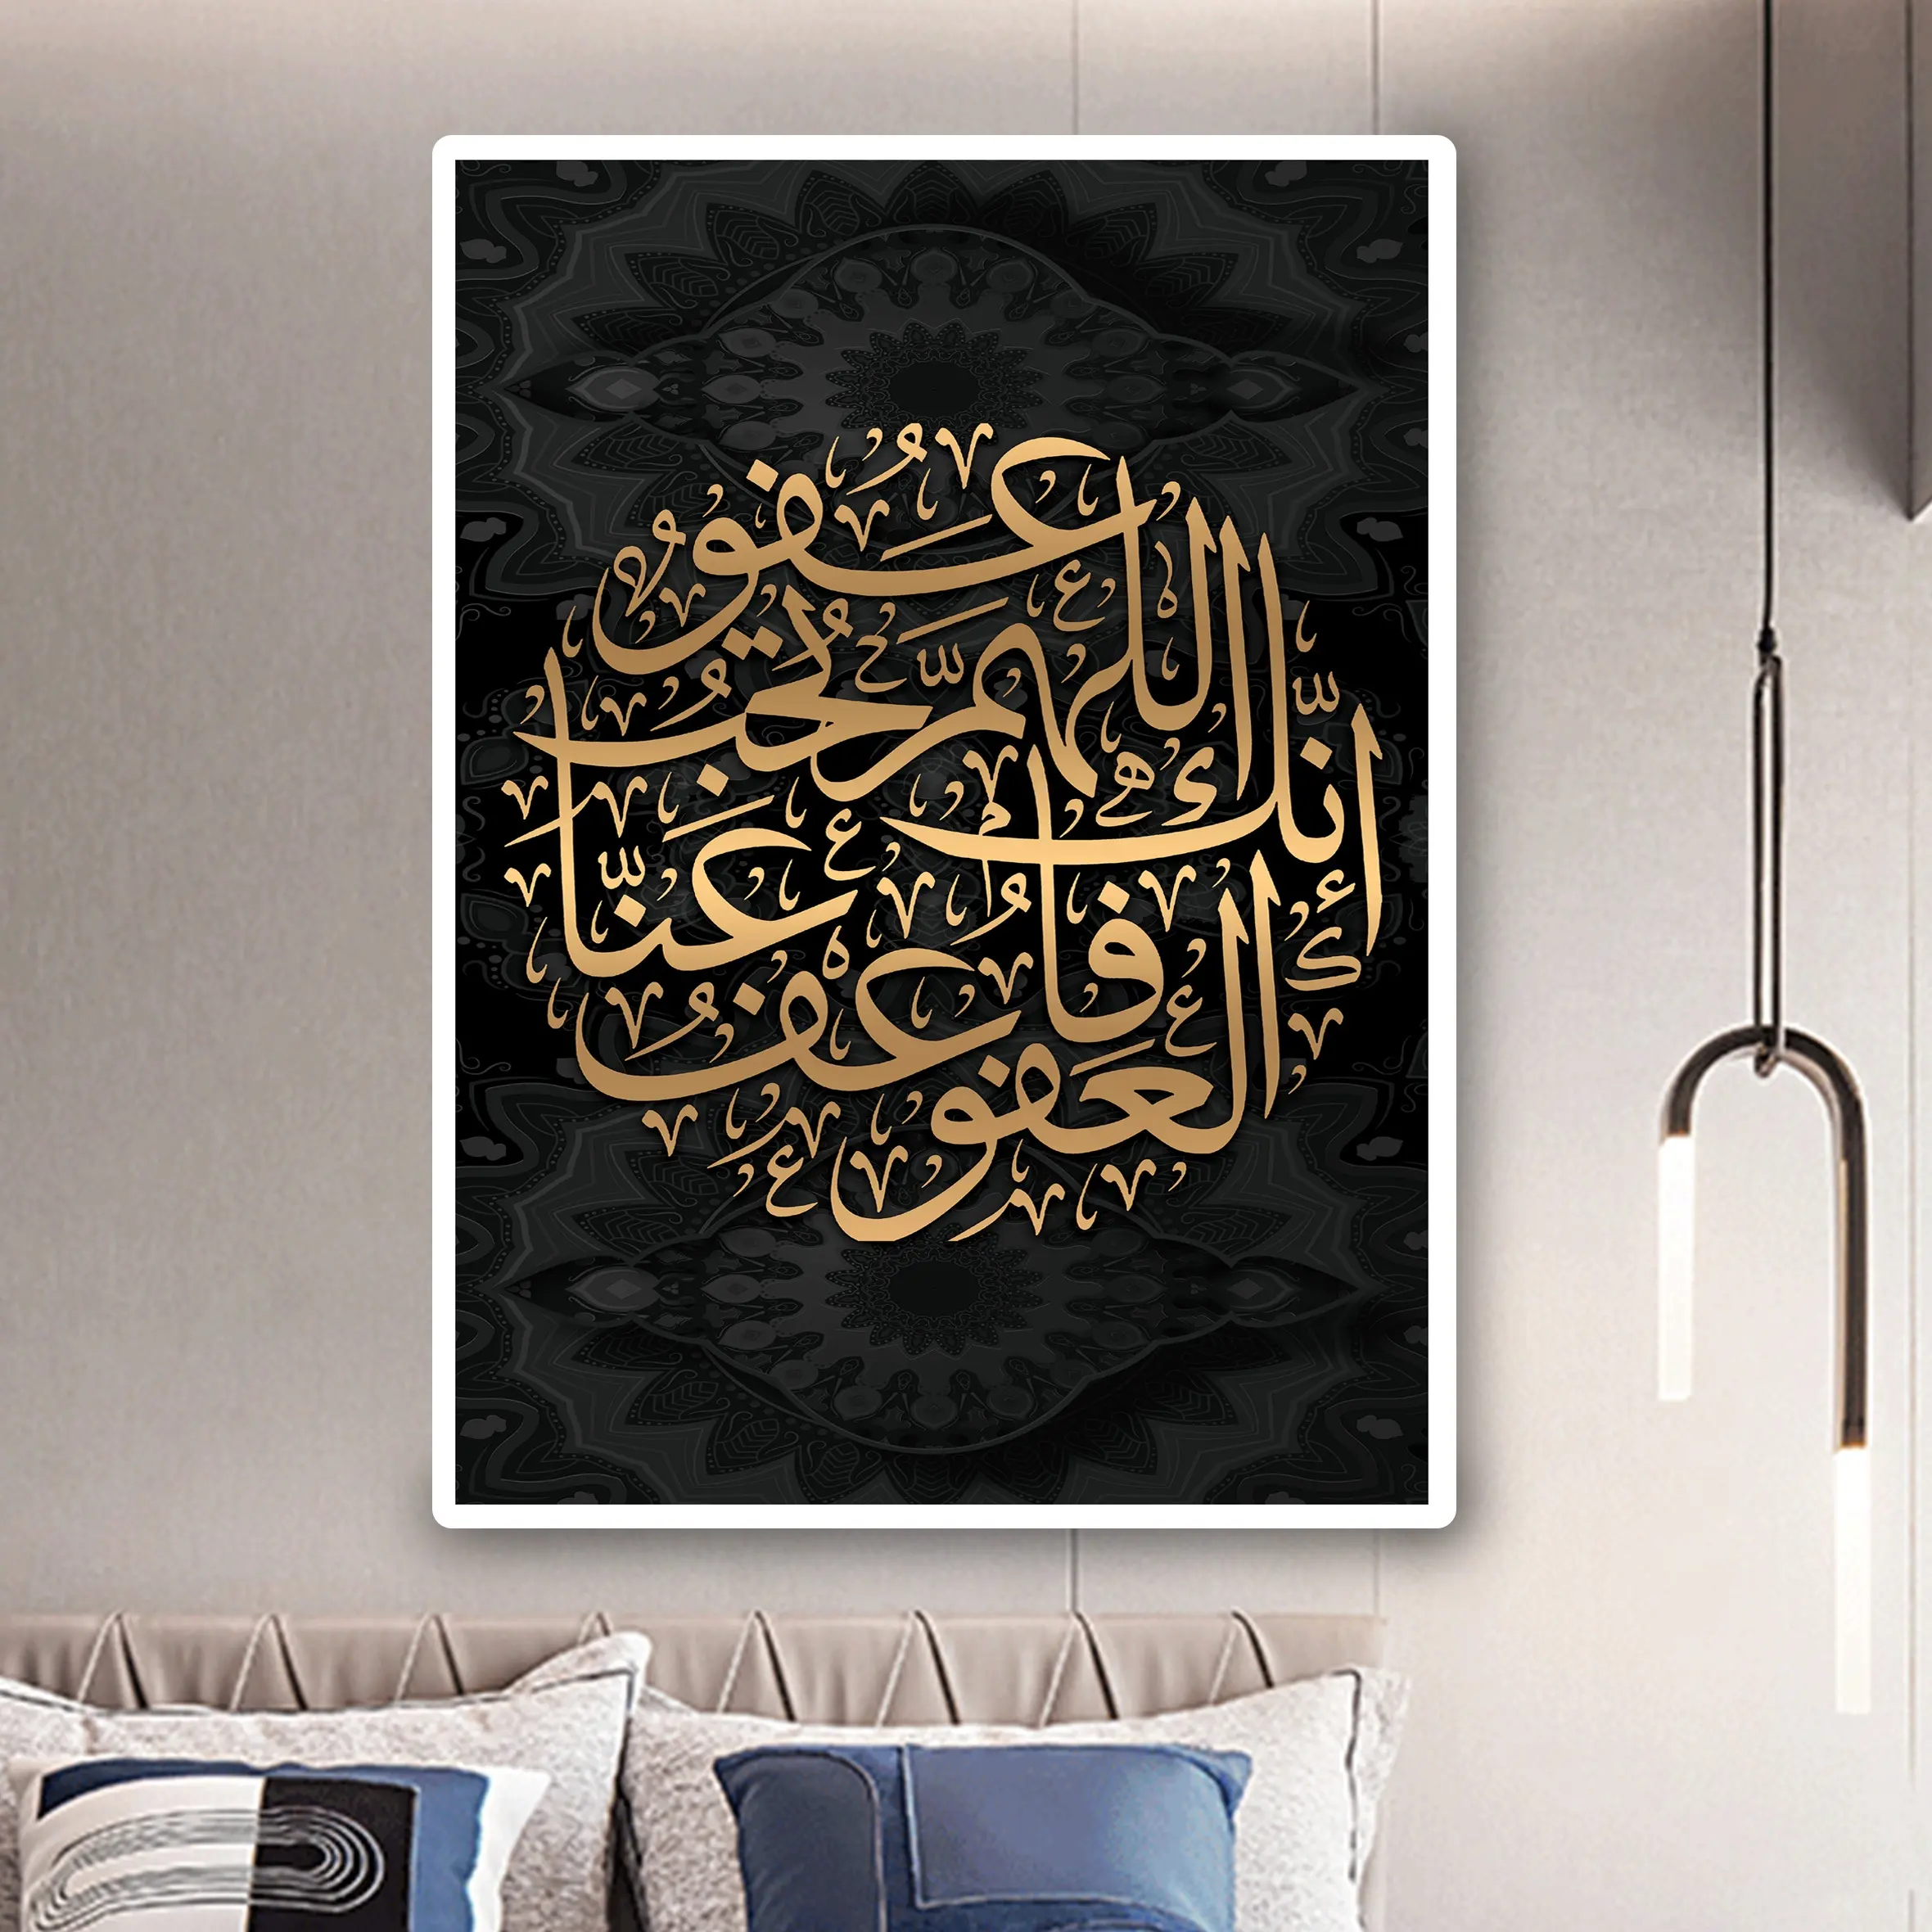 Darling kaligrafi Quran gambar kanvas lukisan porselen kristal lukisan Muslim Islam Dekorasi seni dinding untuk dekorasi rumah